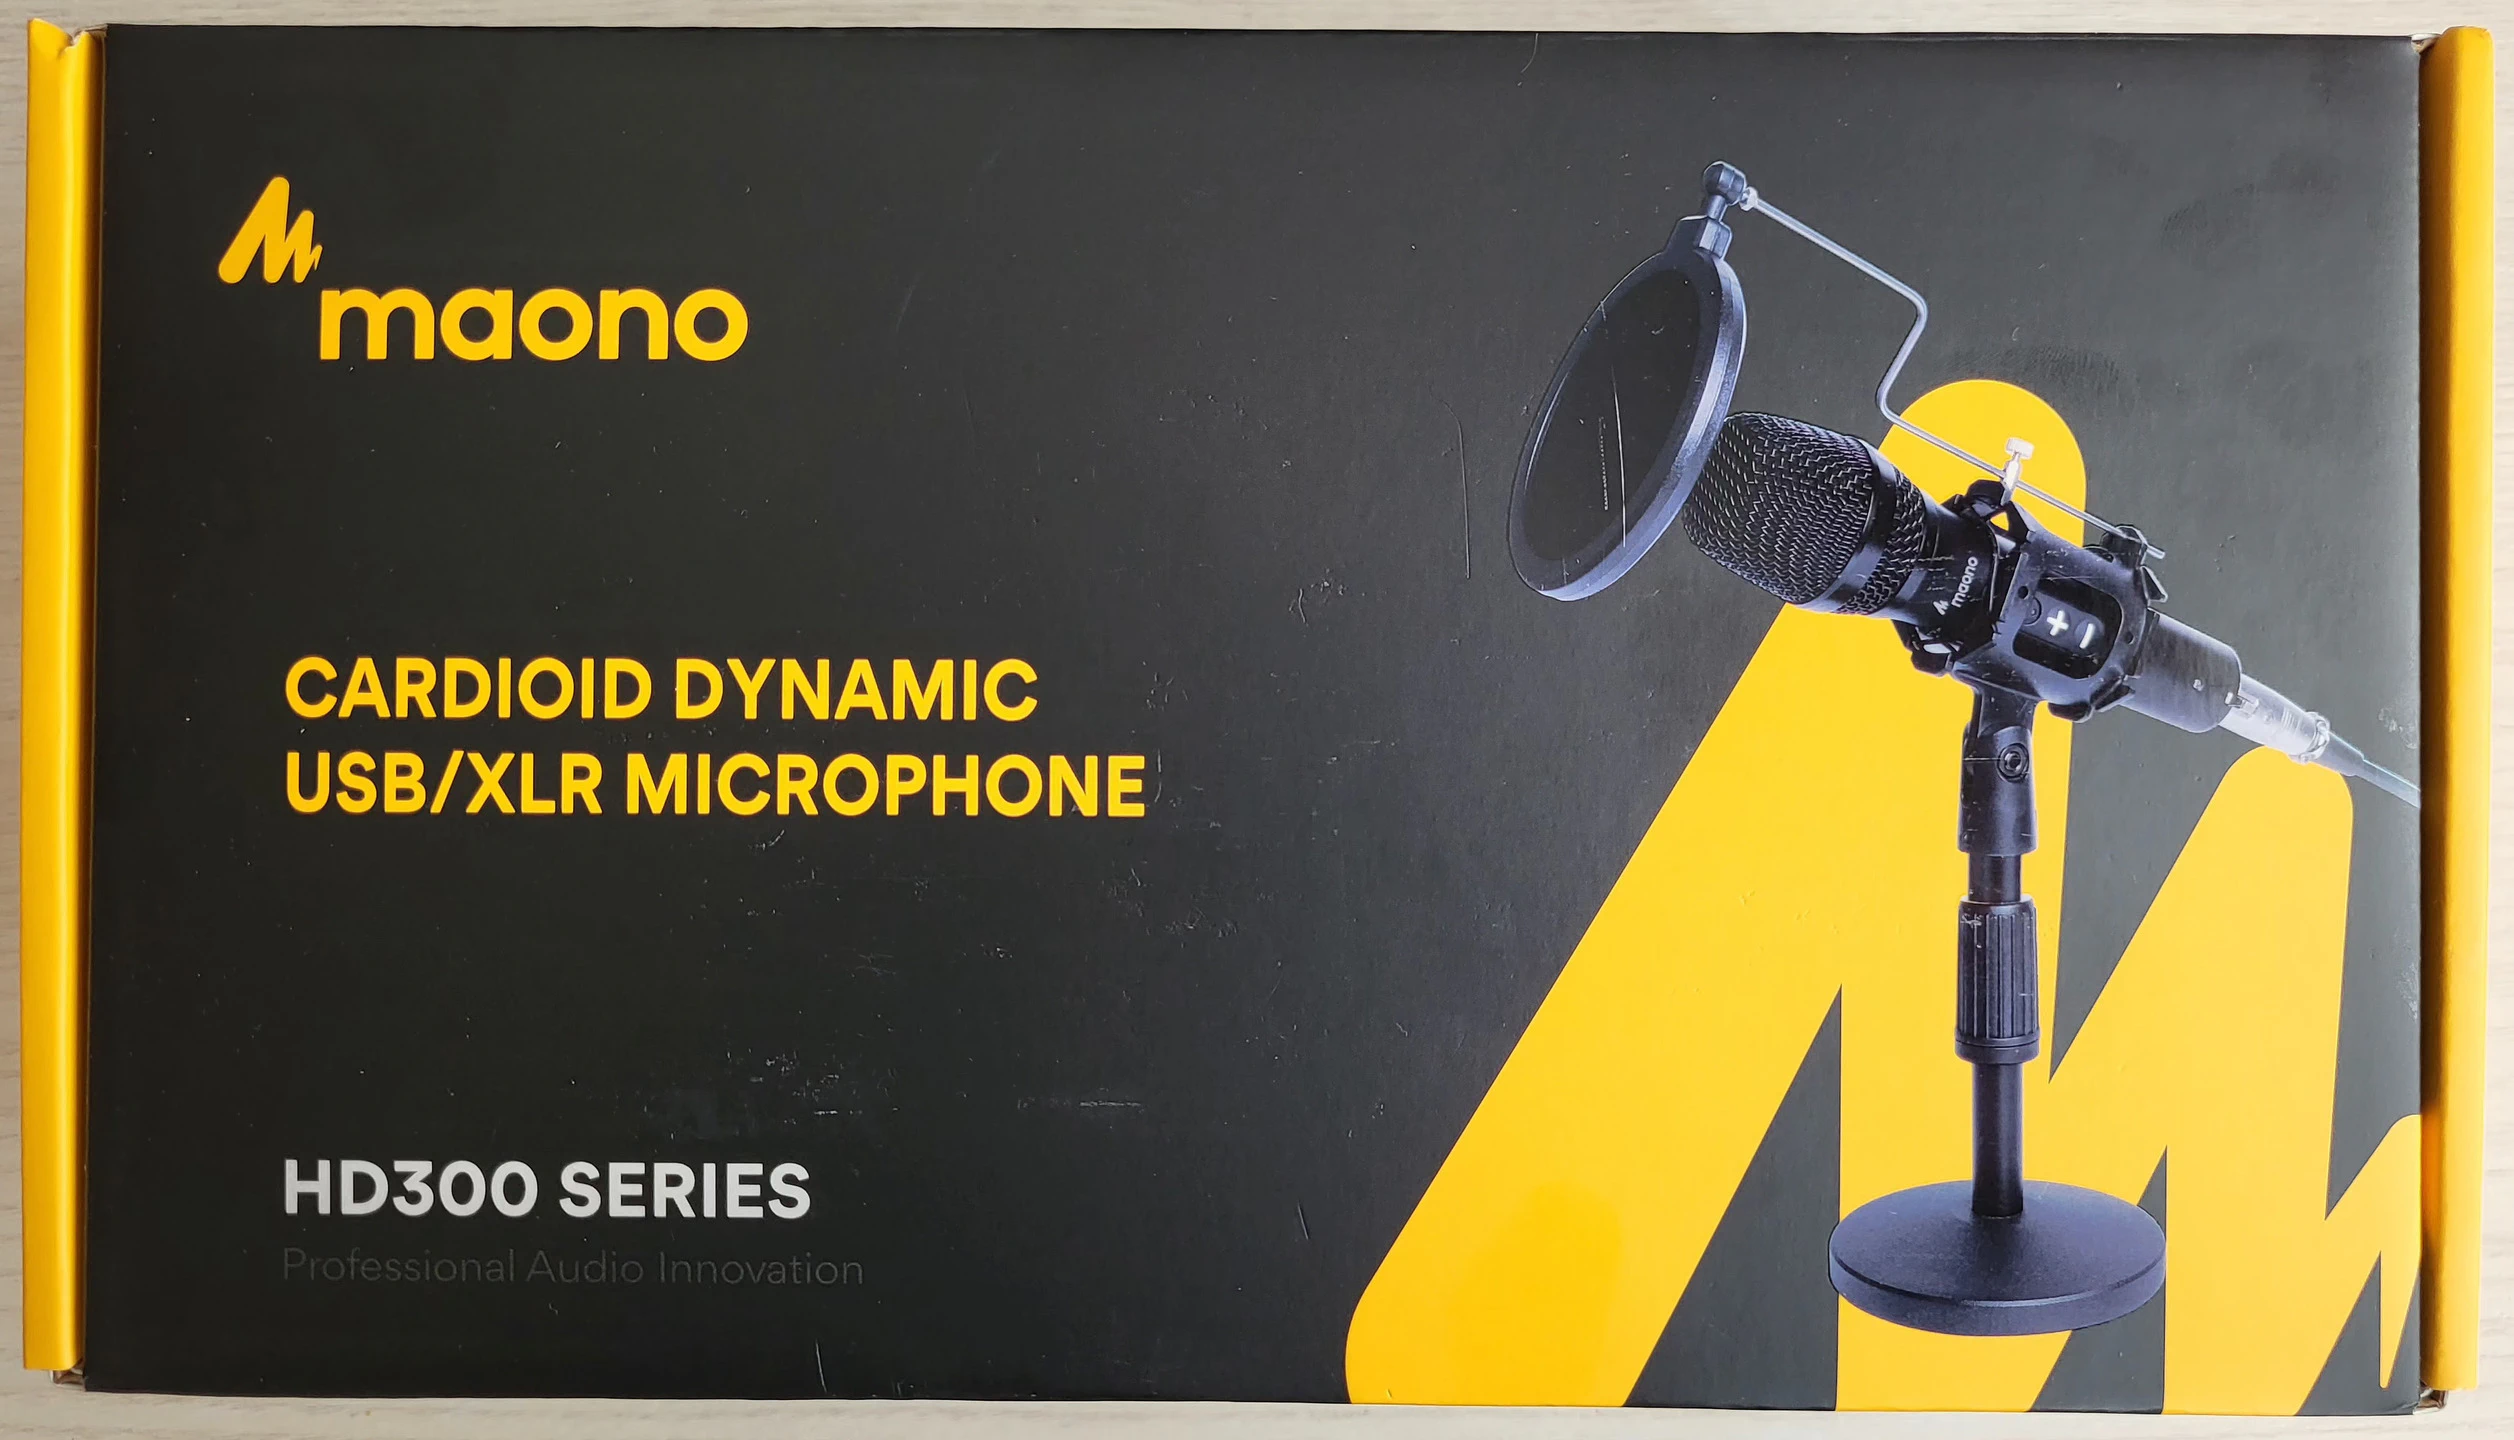 Desempaquetado y análisis del micrófono MAONO HD300T